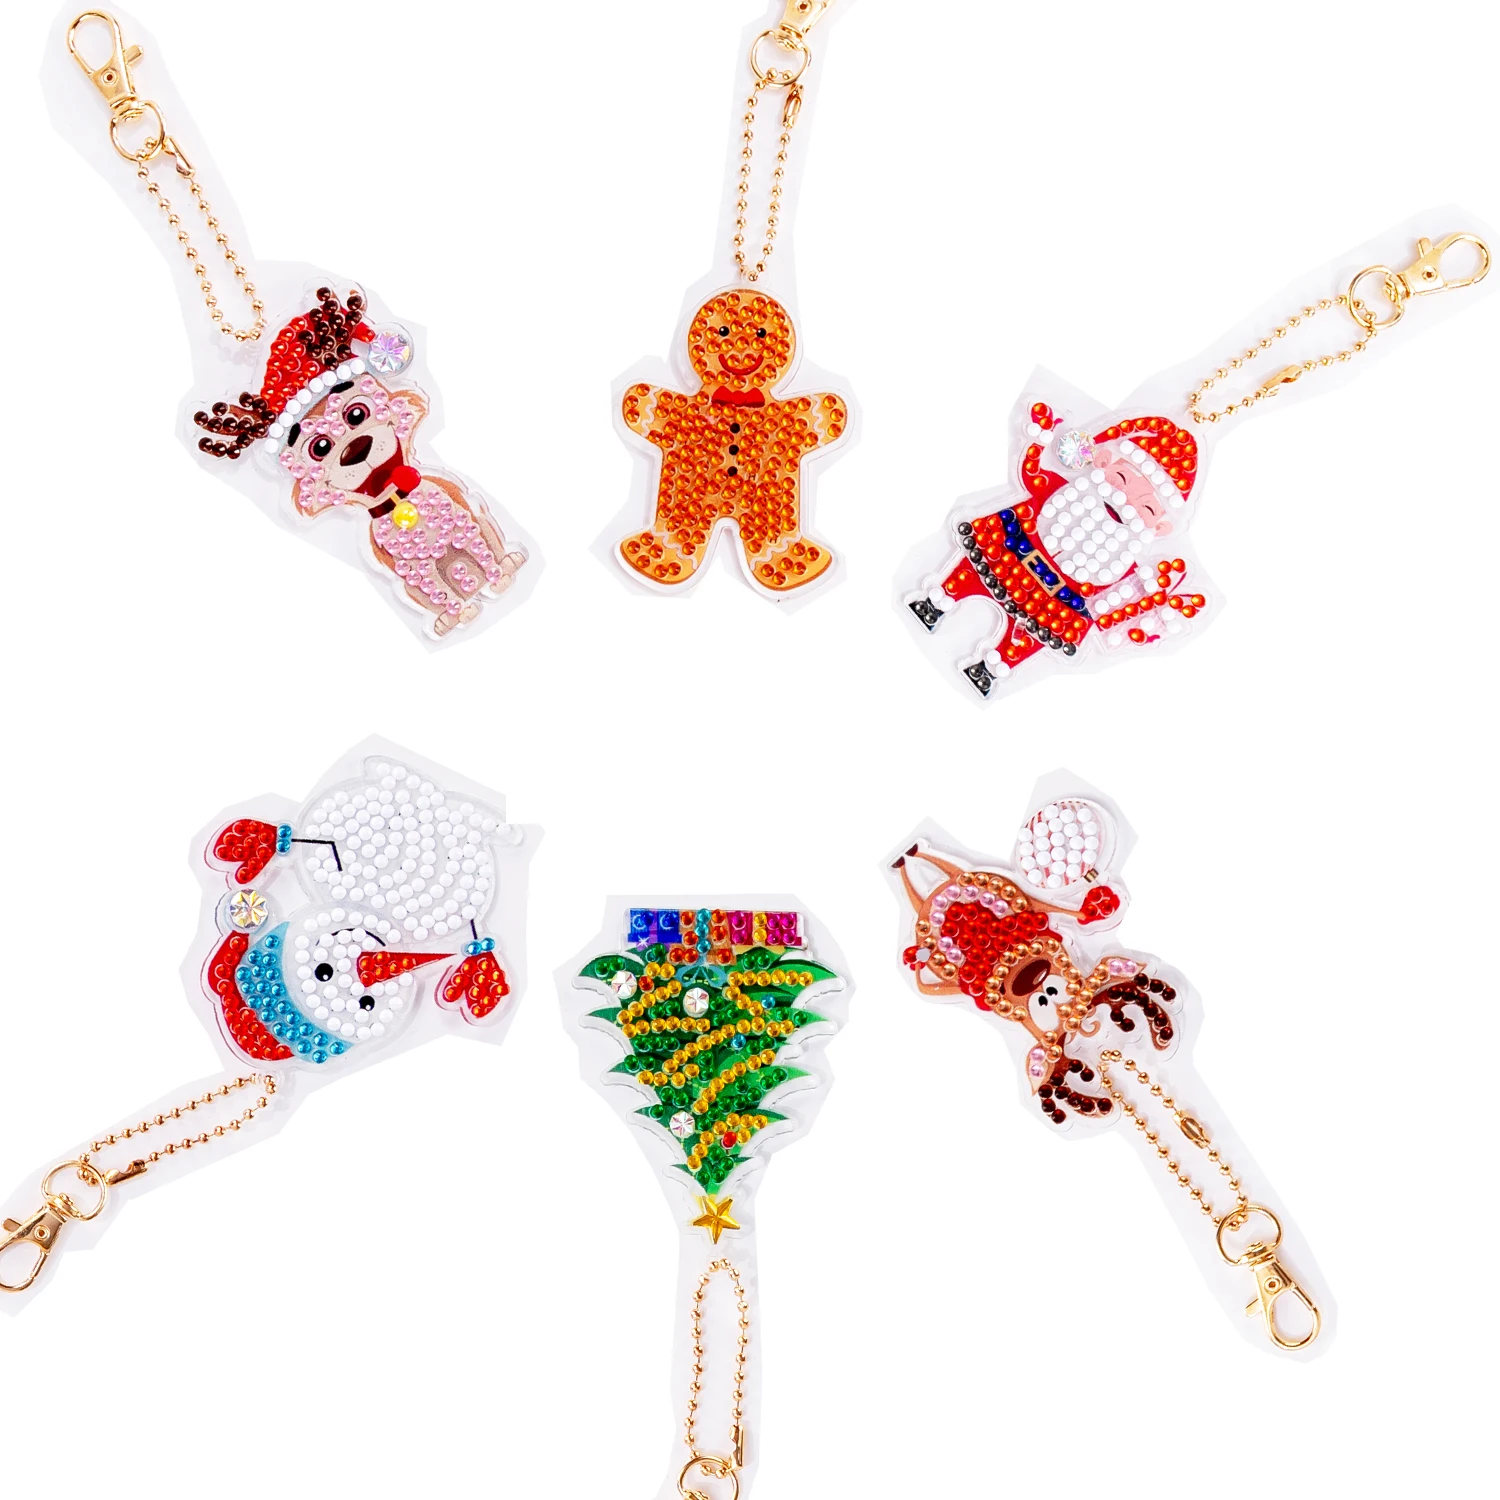 Брелок с ромбовидной росписью 5D Специальной формы Рождественский подарок 6шт Декор для поделок своими руками для ребенка с мозаичным рисунком дерева Санта-Клауса . ' - ' . 5